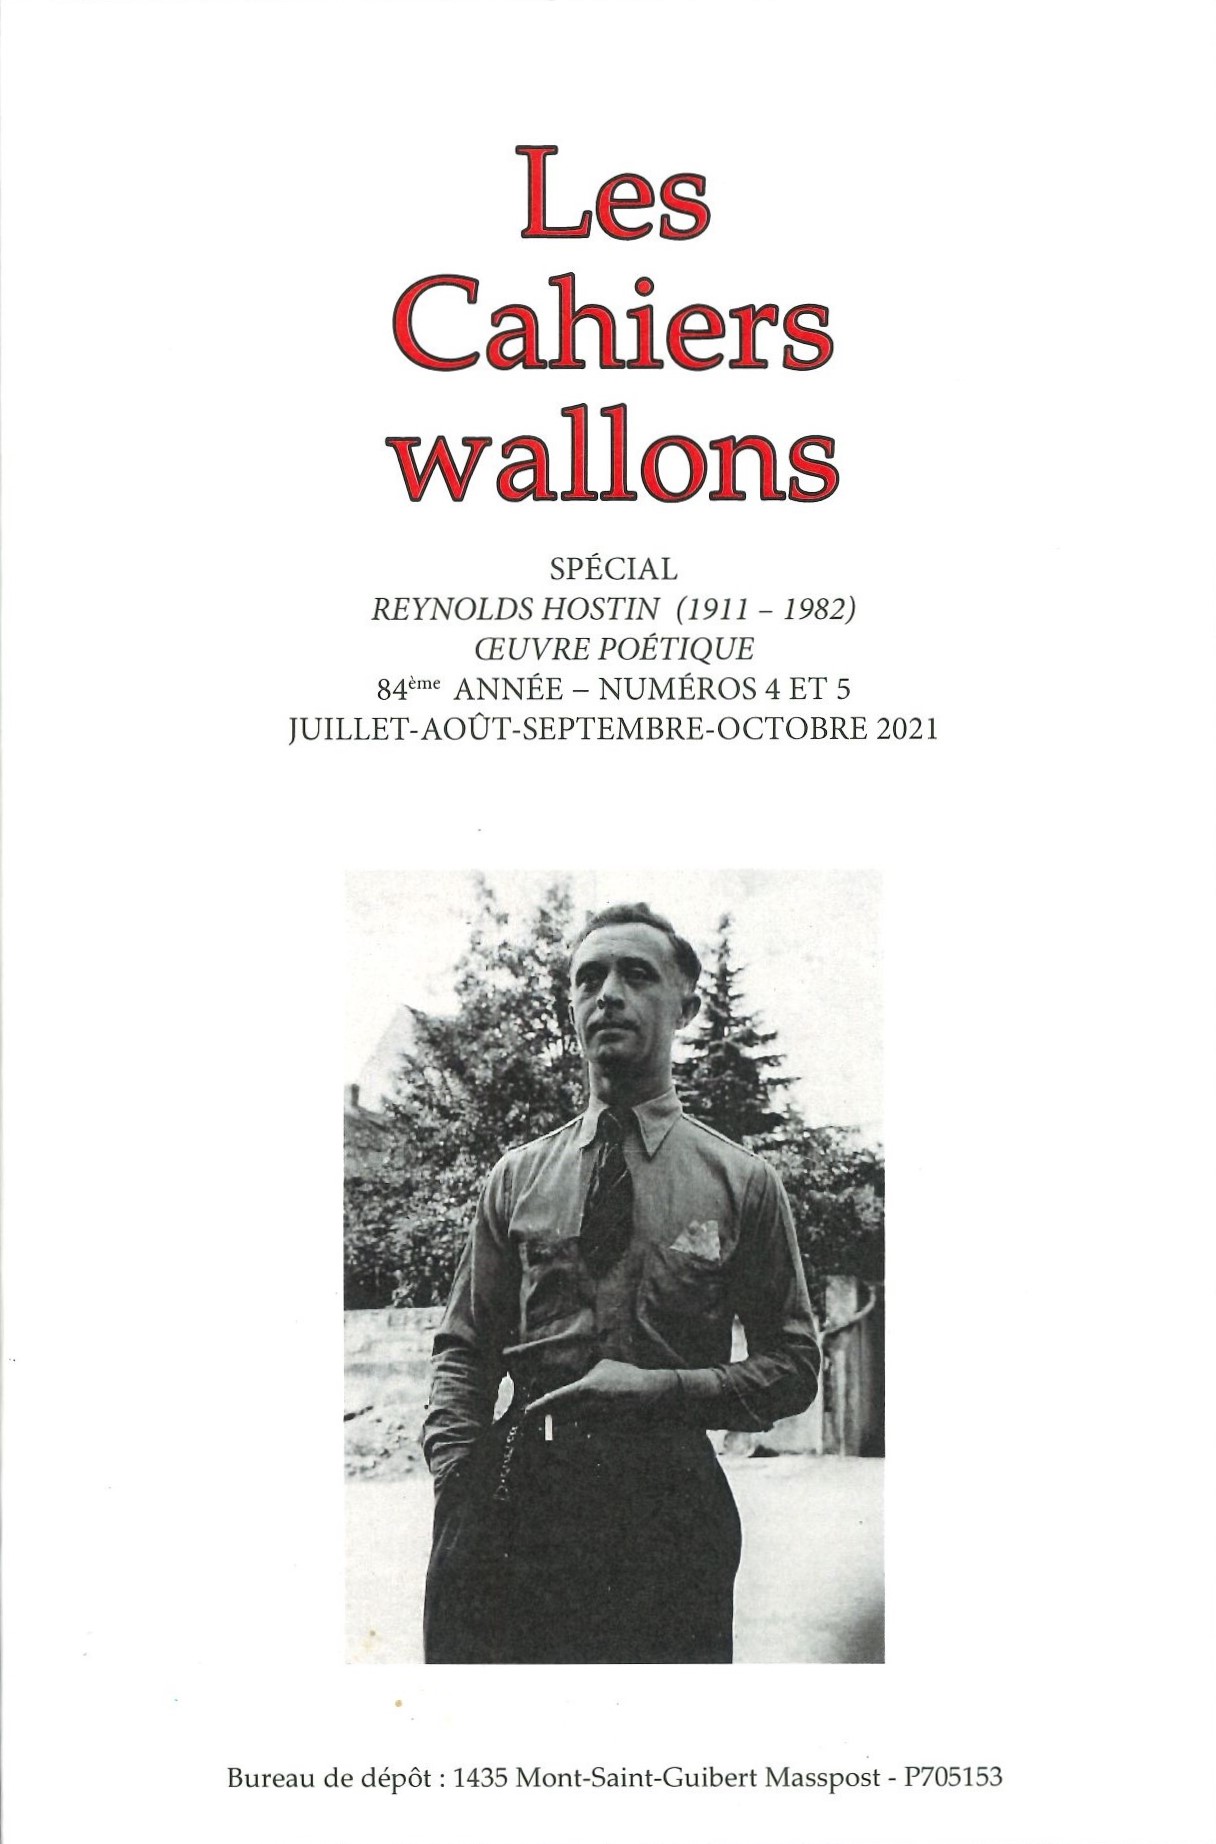 Les cahiers wallons : Spécial Reynolds Hostin (1911 - 1982) - Œuvre poétique